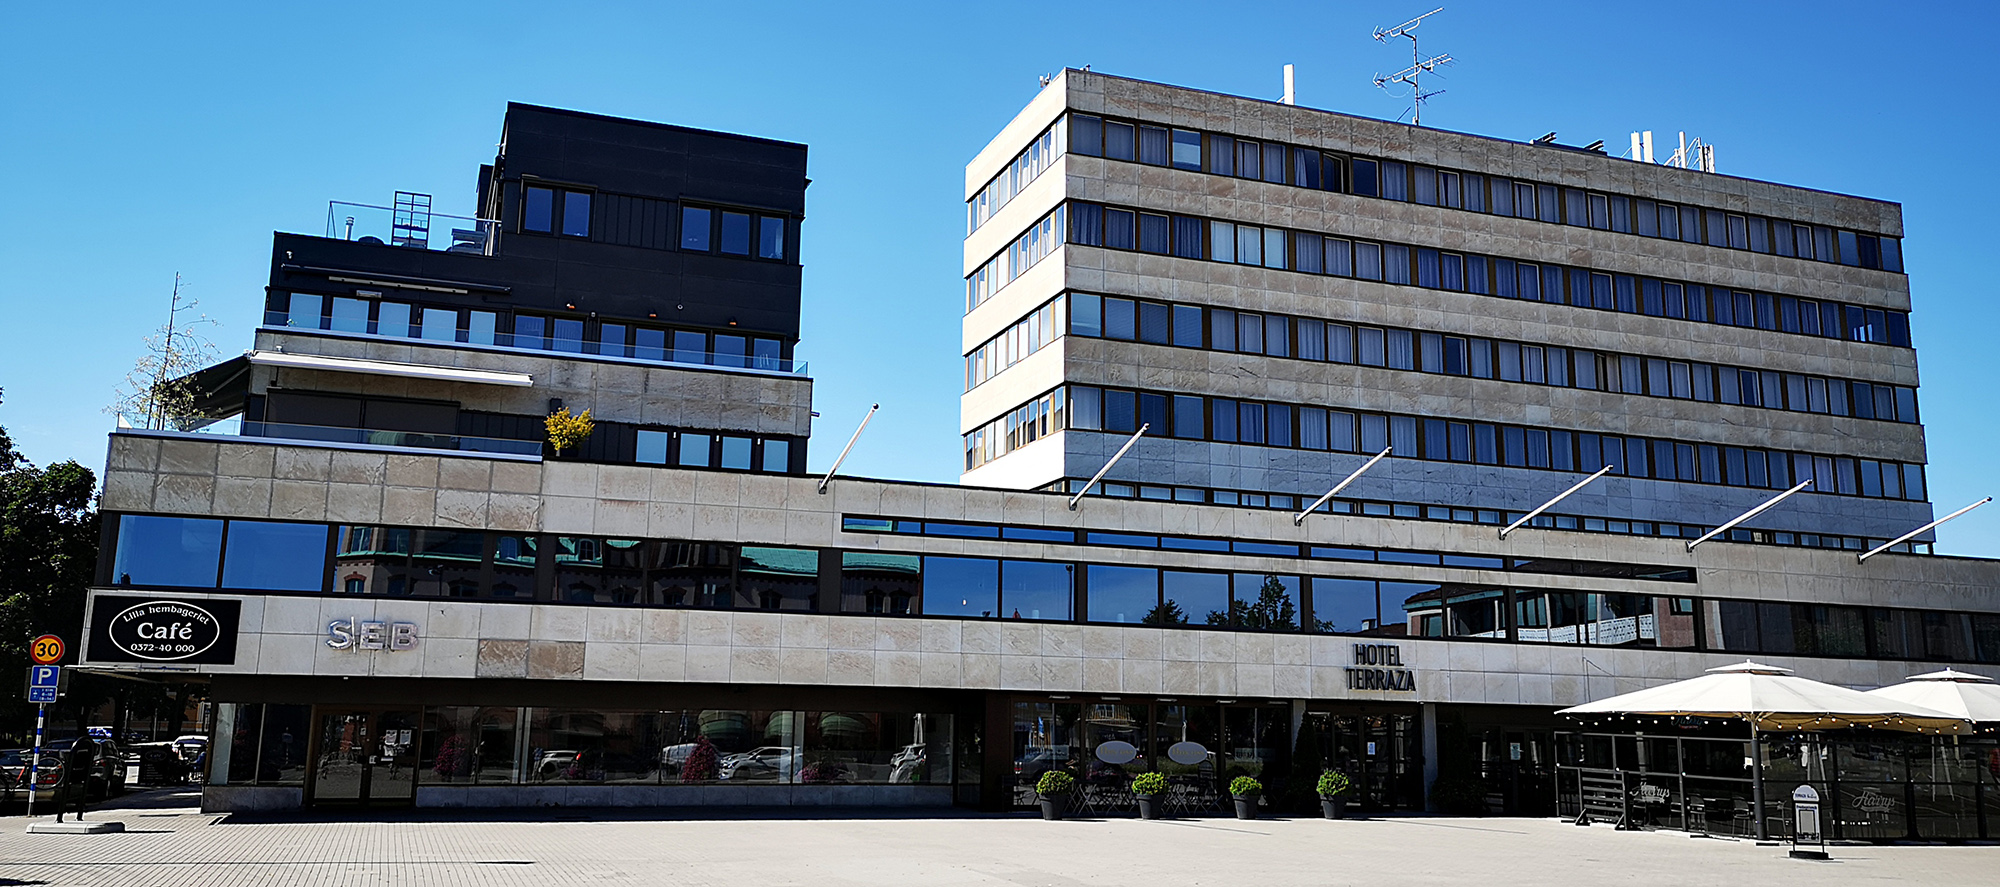 Hotell Terraza är Ljungbys fulaste byggnad.